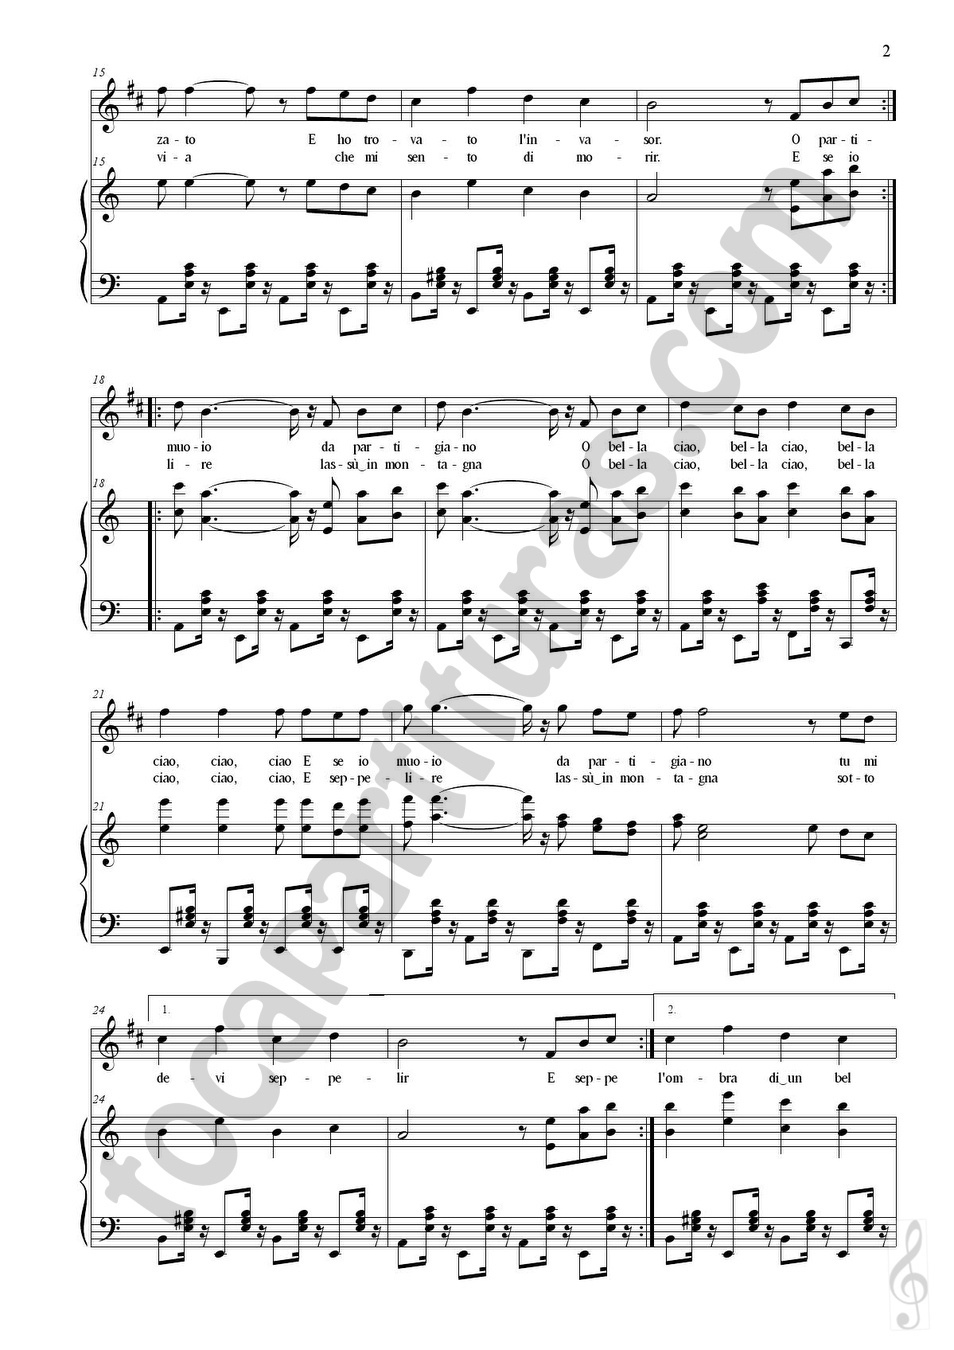 Bella Ciao - Partitura fácil y gratuita en PDF - La Touche Musicale